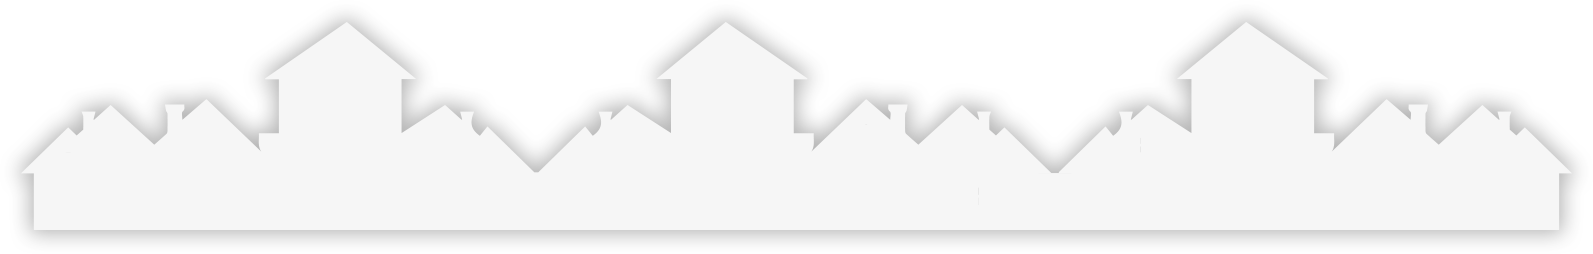 Housing Overlay